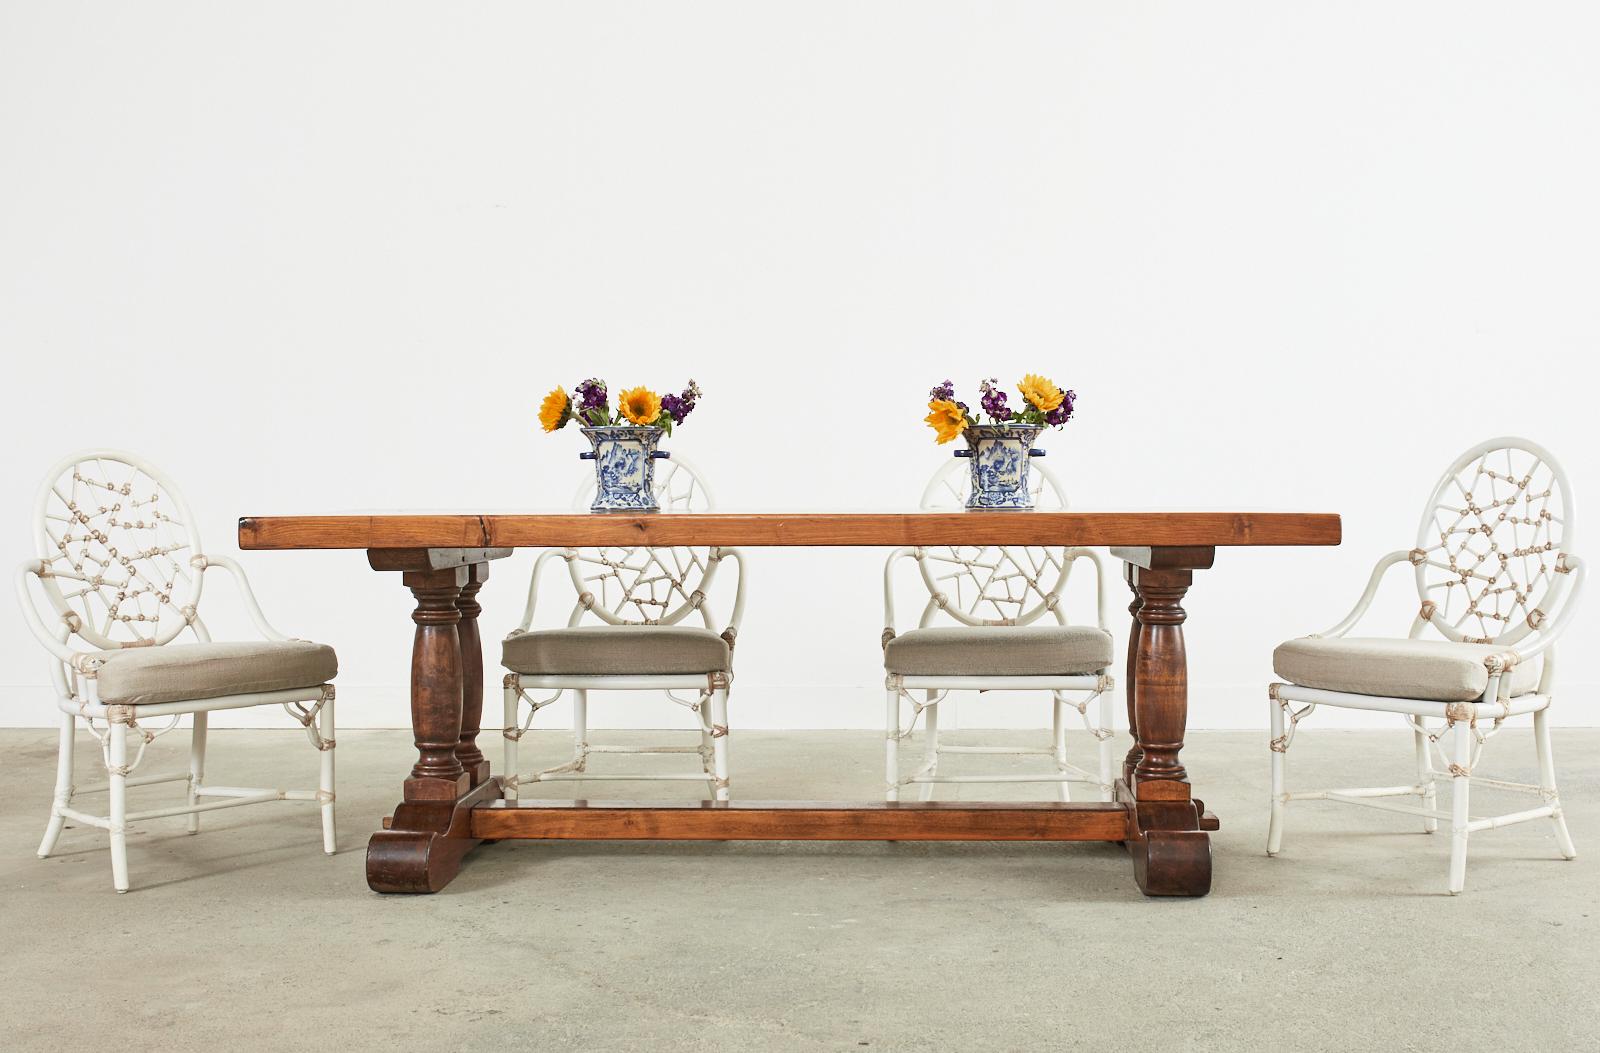 Imposanter französischer Landhaus-Esstisch aus Nussbaum im Landhausstil. Der Tisch hat eine 2,5 Zoll dicke Walnussplatte mit einer warmen honigfarbenen Oberfläche. Die große Platte wird von einem Gestell mit doppelten balusterförmigen Beinen auf